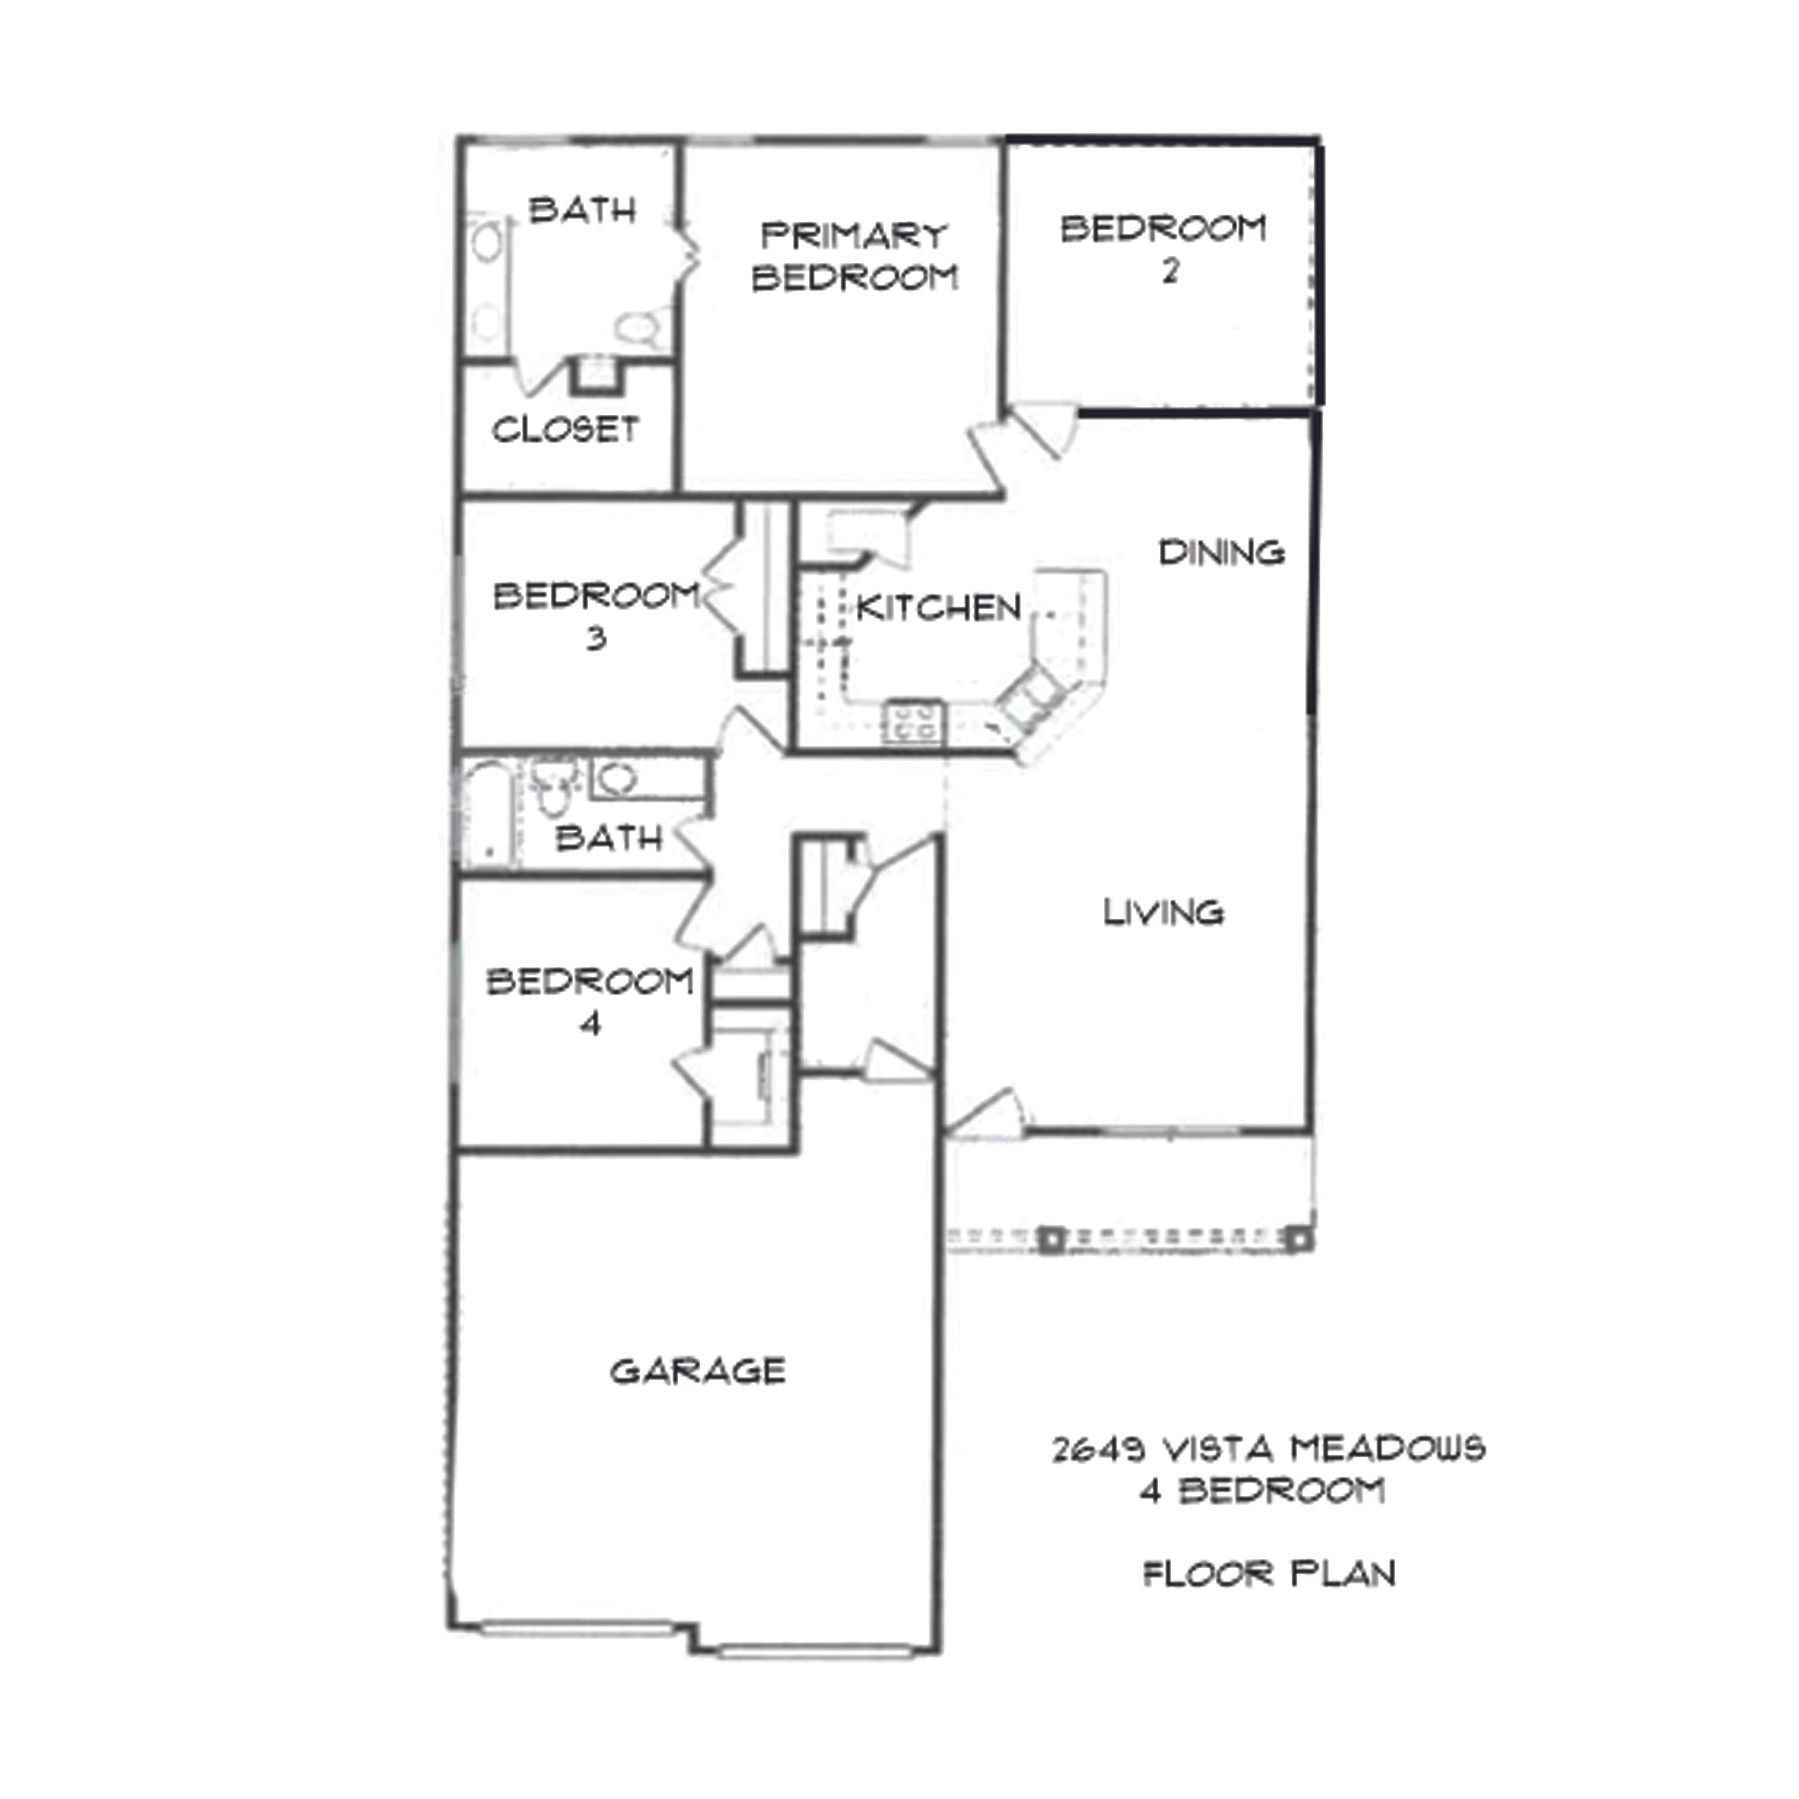 2649 Vista Meadows floor plan